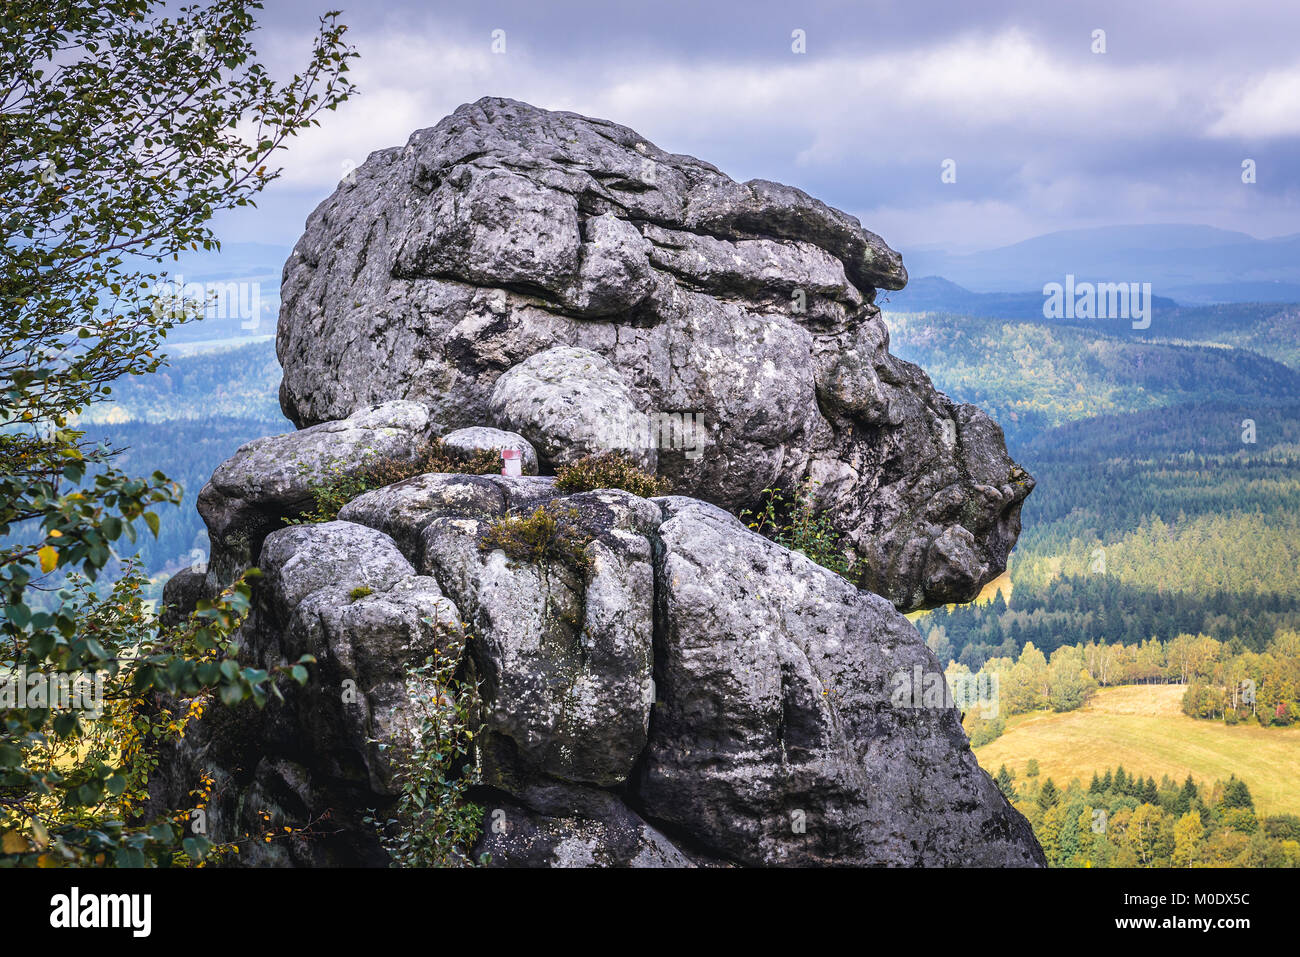 Rock le gorille Szczeliniec Wielki, le plus haut sommet des montagnes Stolowe (Montagnes de Table), une partie de la gamme des Sudètes, Pologne Banque D'Images